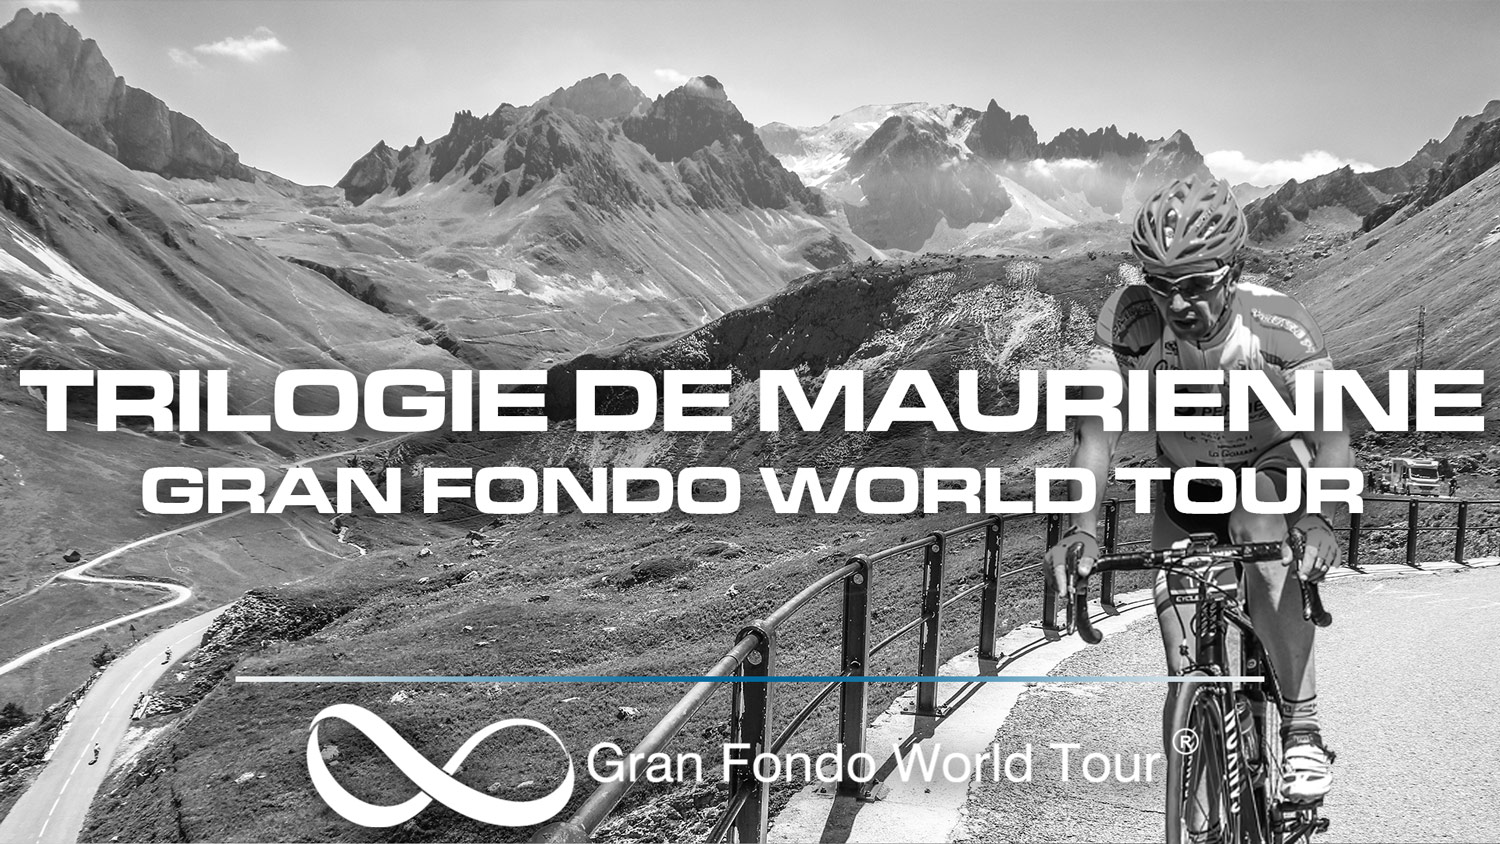 Featured image for “La Trilogie de Maurienne, manche du Gran Fondo World Tour”